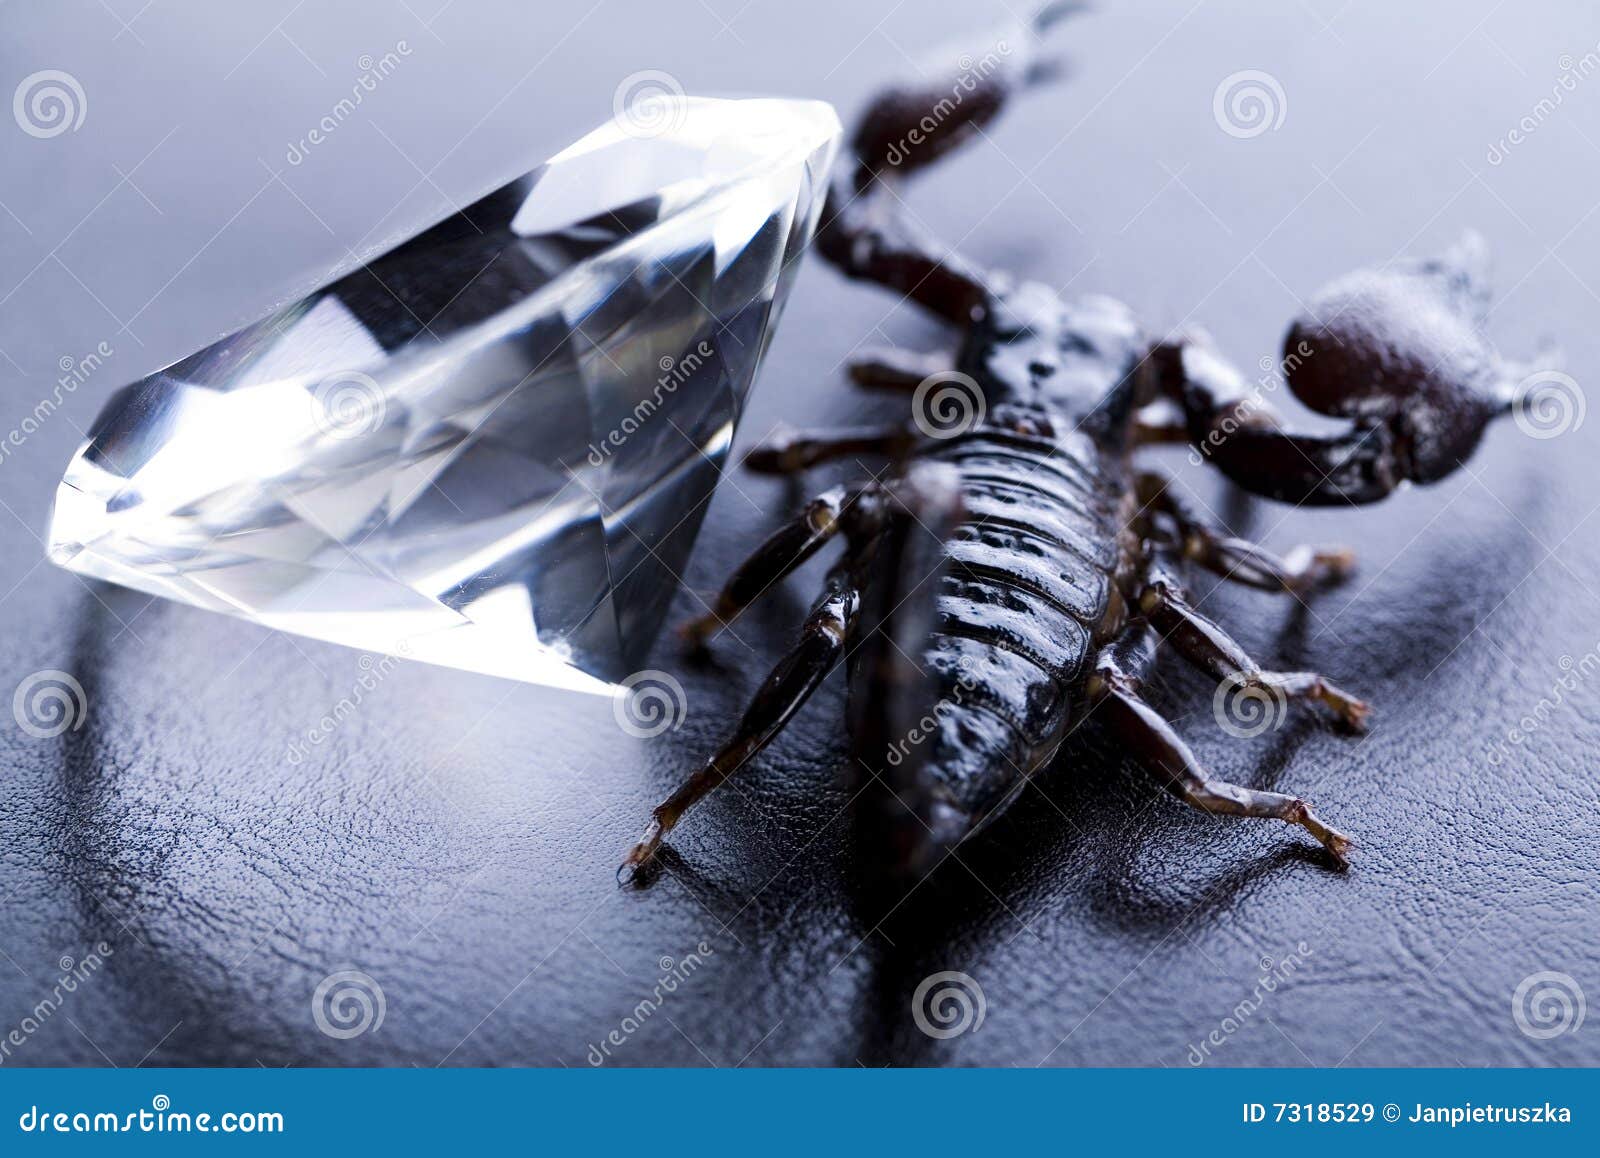 Diamante e scorpione. Gli scorpioni sono artropodi carnivori otto-forniti di gambe.